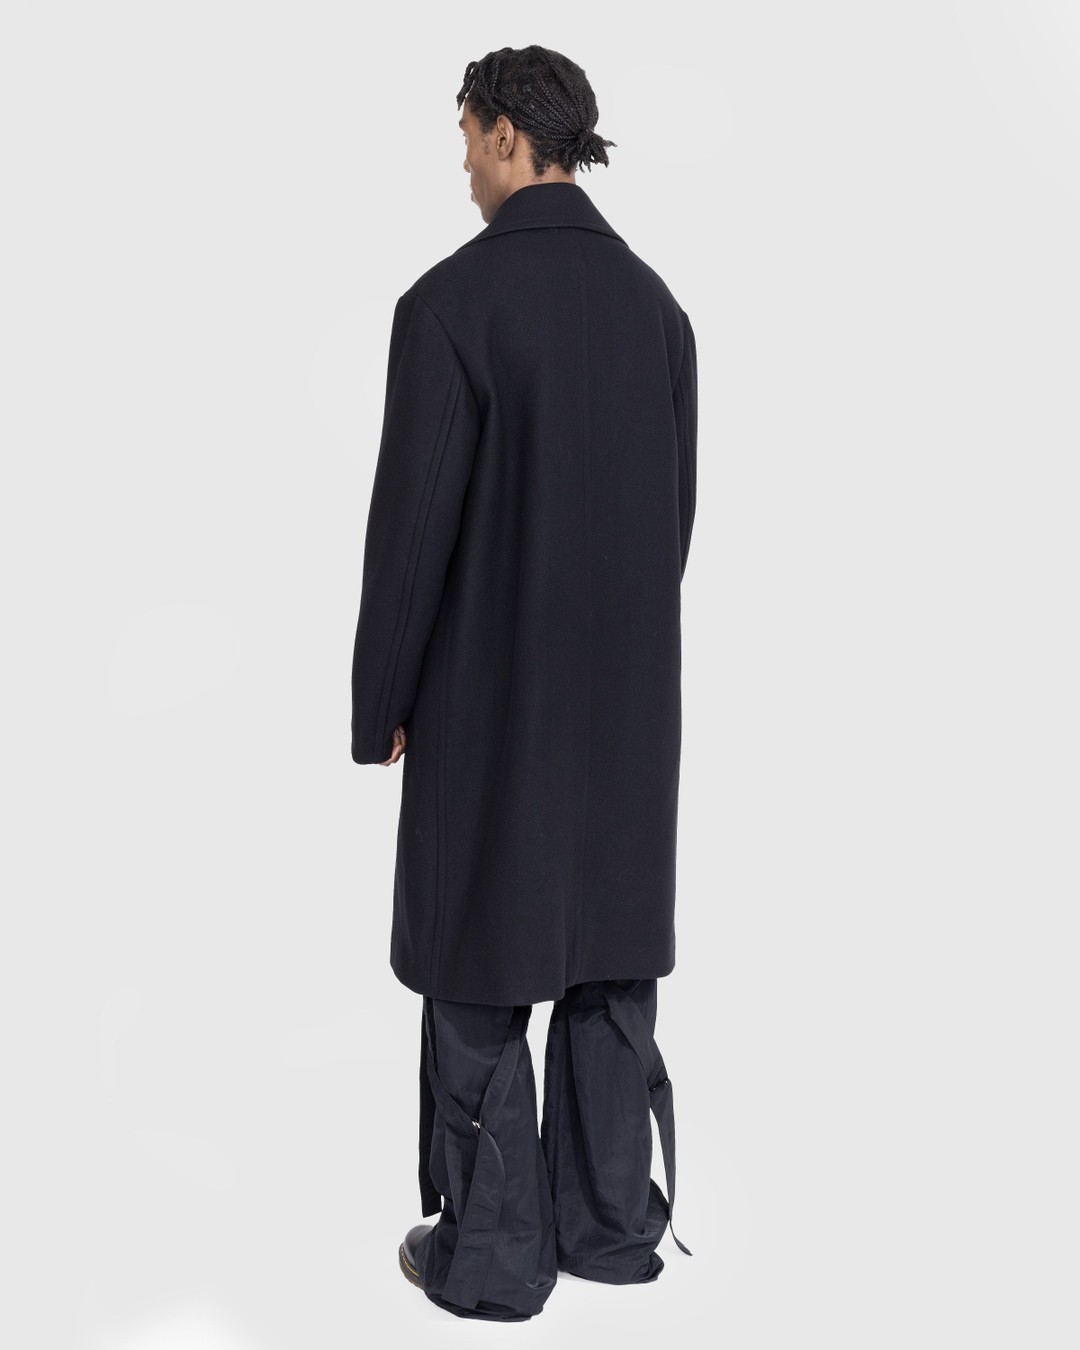 Dries van Noten – Raven Coat Black - Outerwear - Black - Image 3